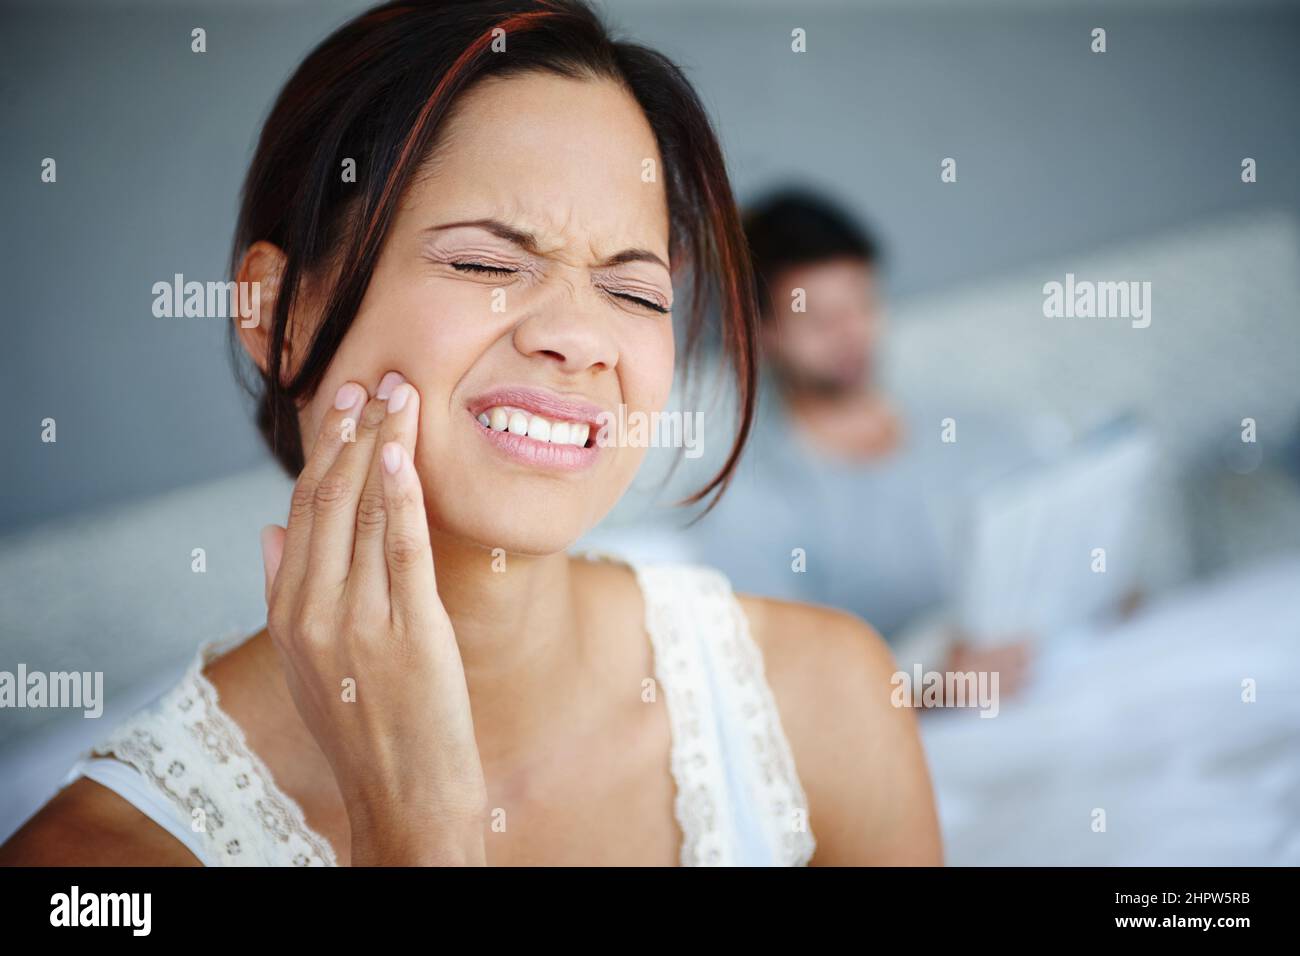 Il est temps d'aller chez le dentiste. Photo d'une femme assise sur le côté de son lit avec mal de dents avec son petit ami à l'arrière-plan. Banque D'Images